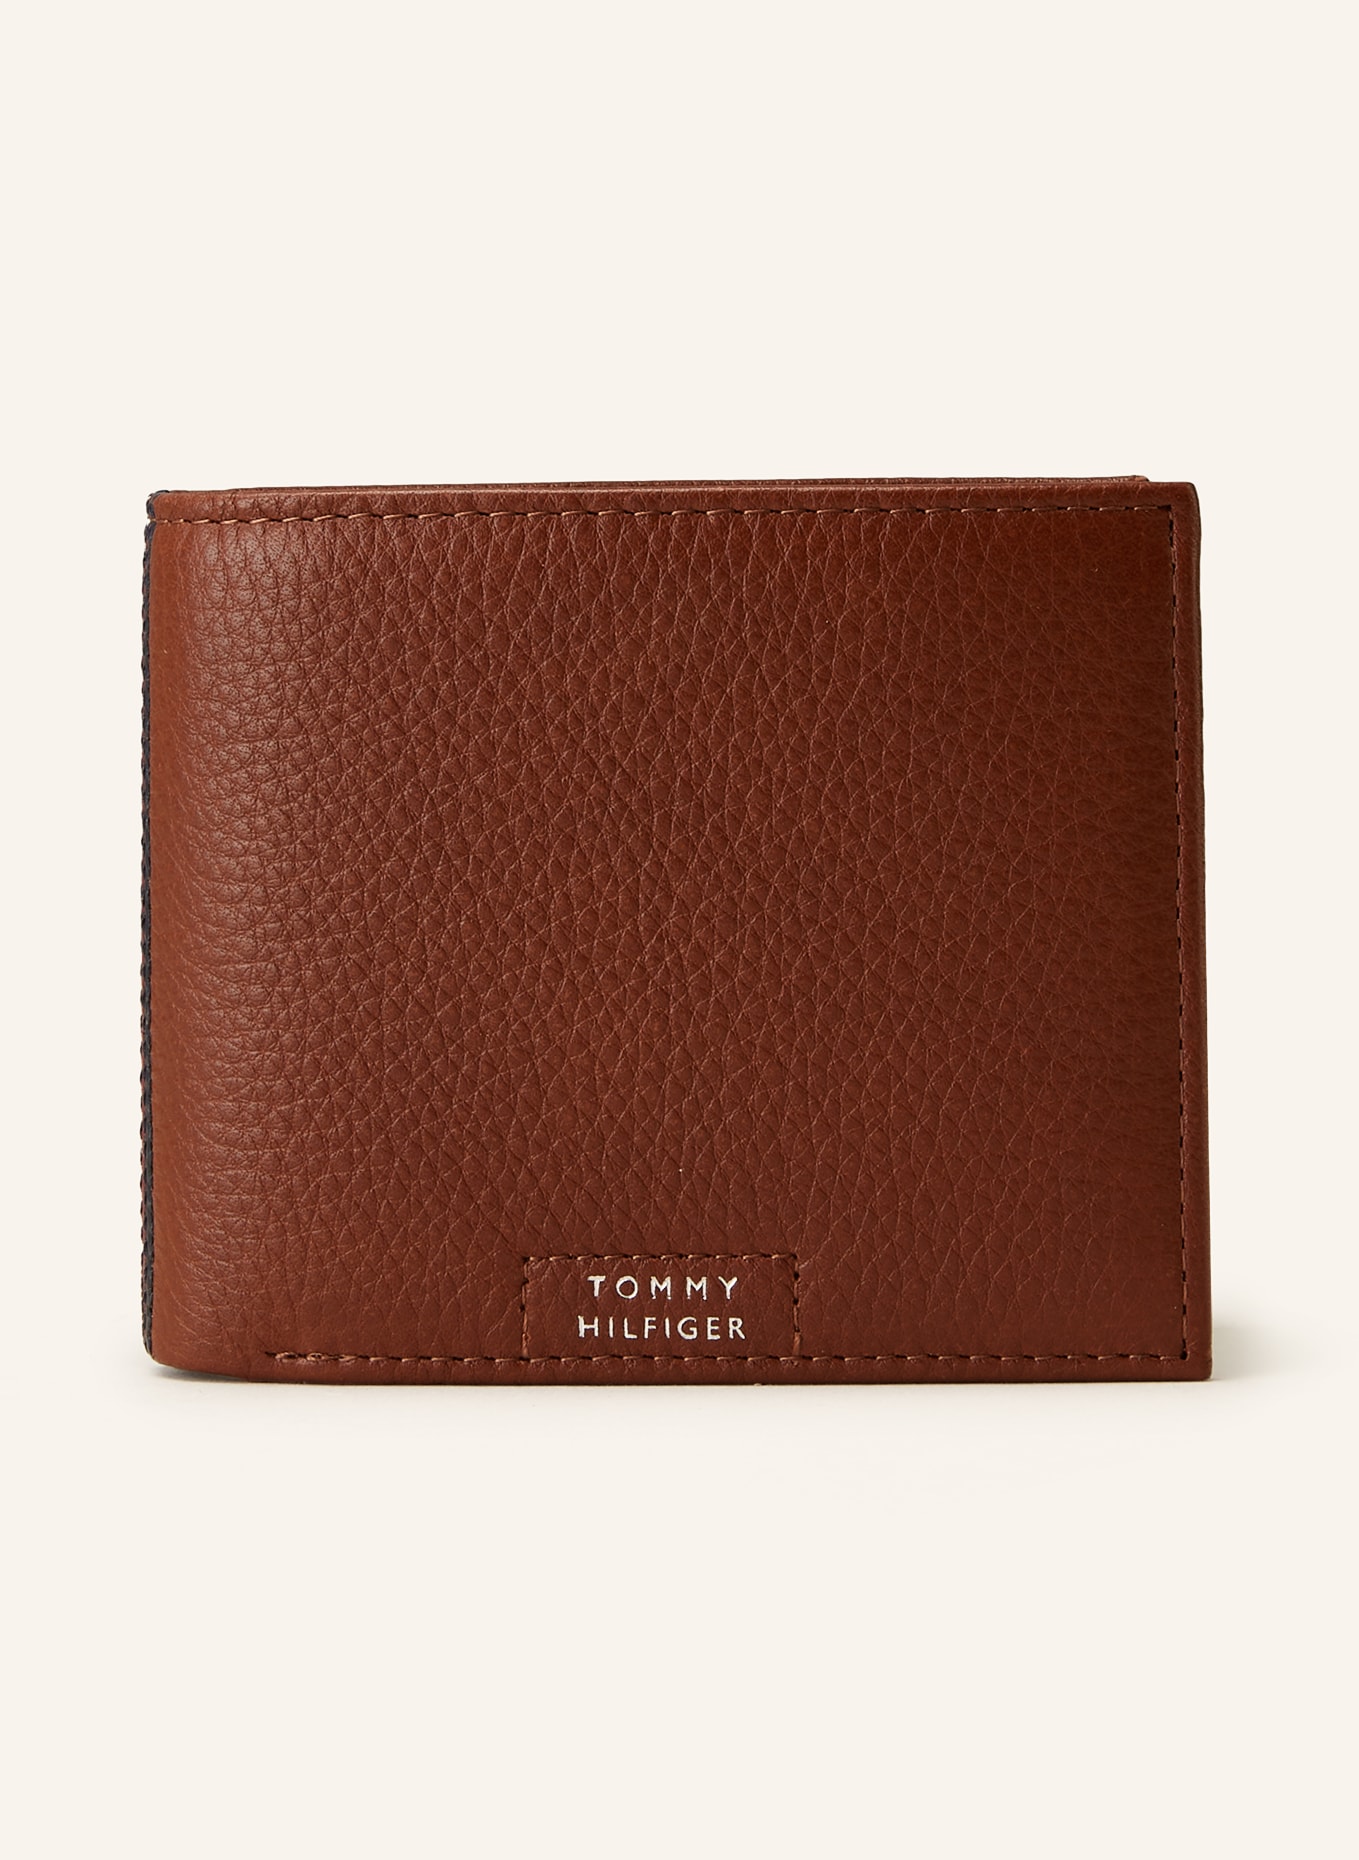 TOMMY HILFIGER Wallet, Color: BROWN (Image 1)